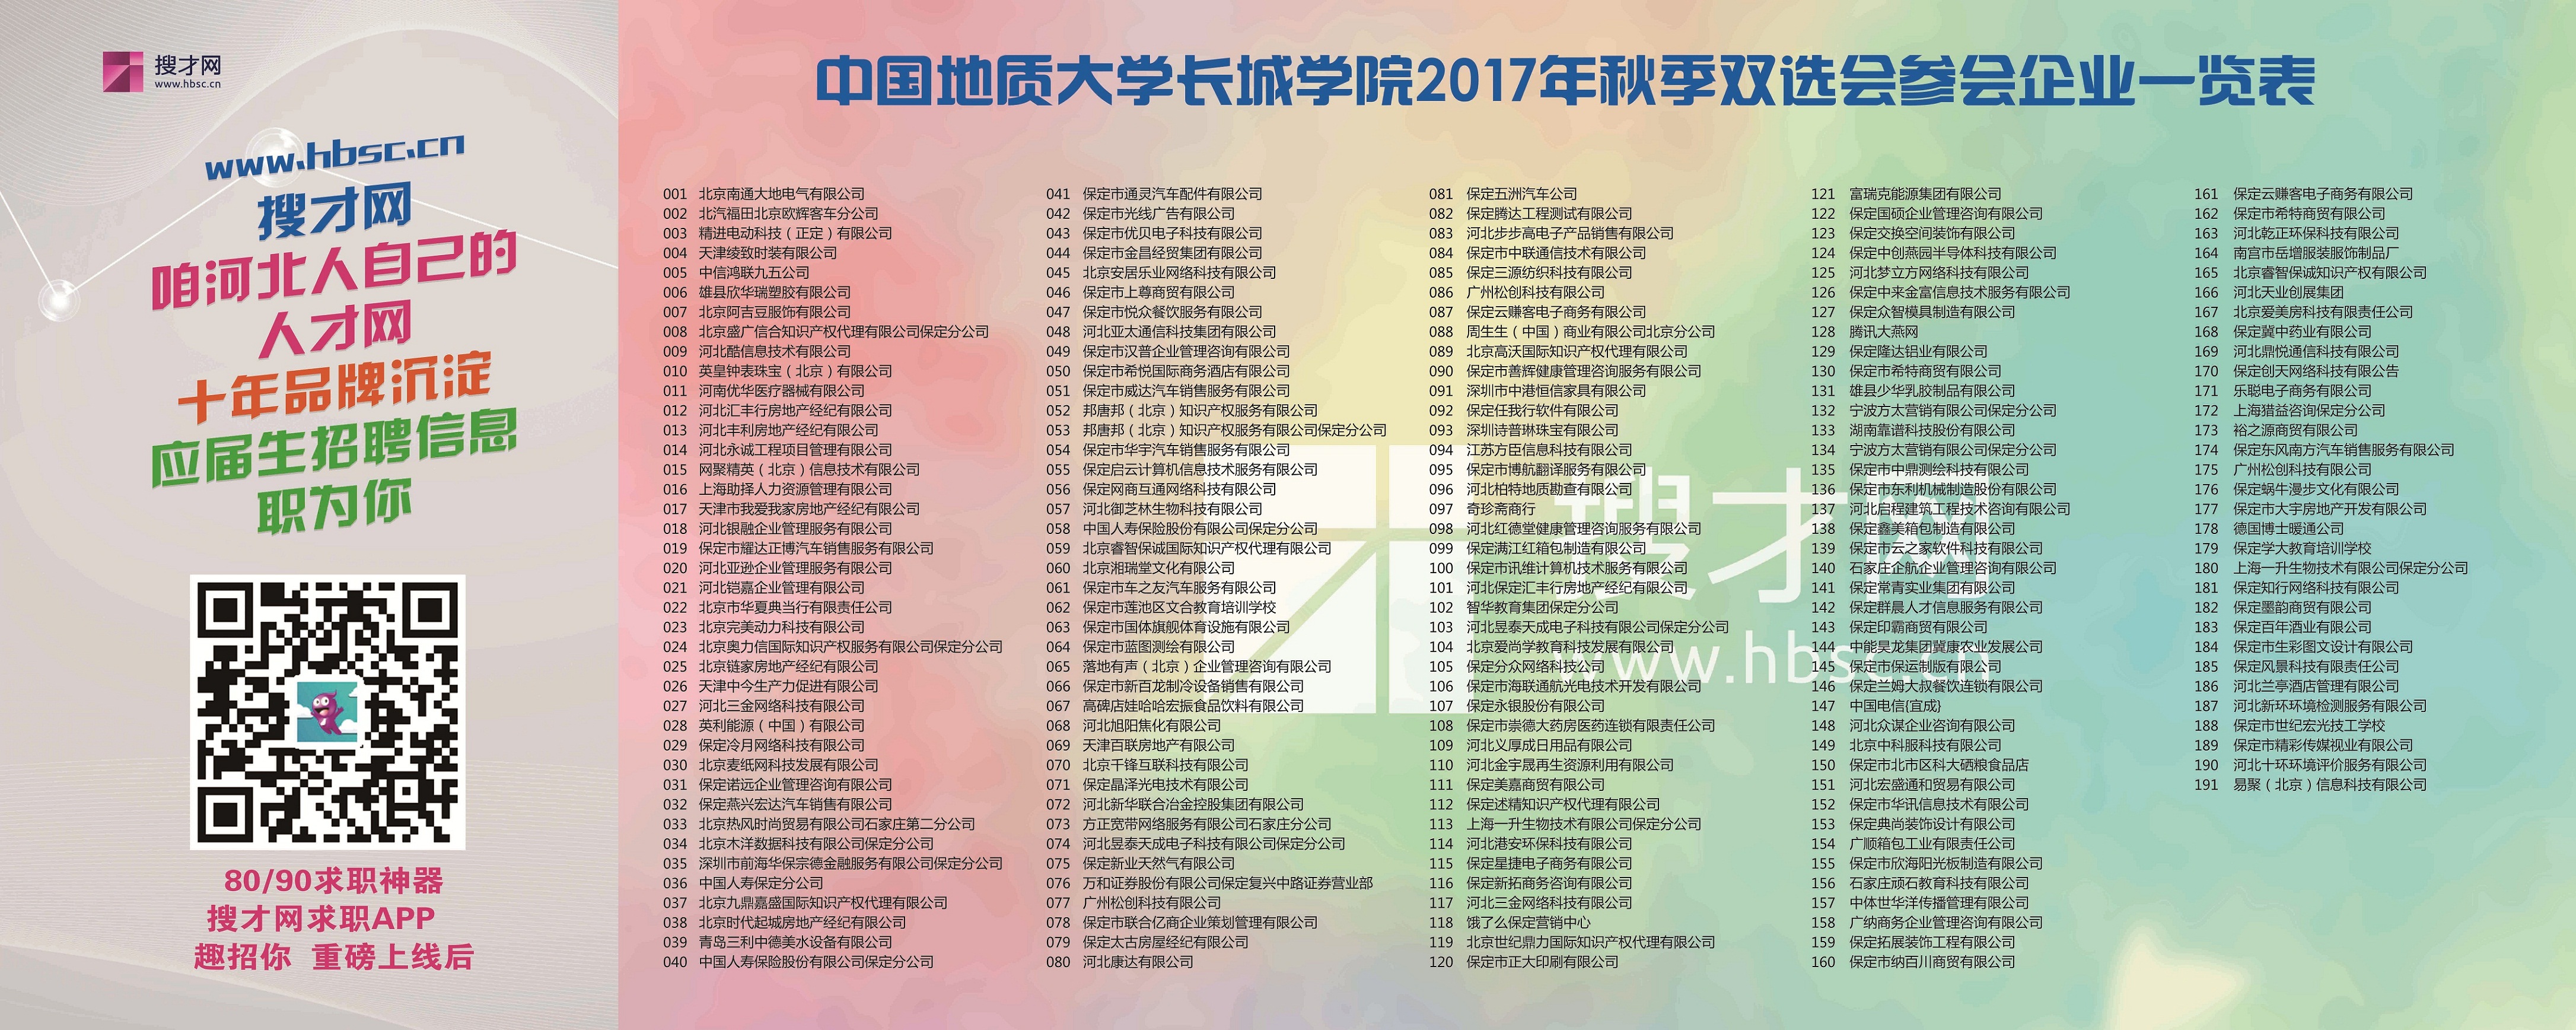 中国地质大学长城学院2017年秋季双选会参会单位一览表